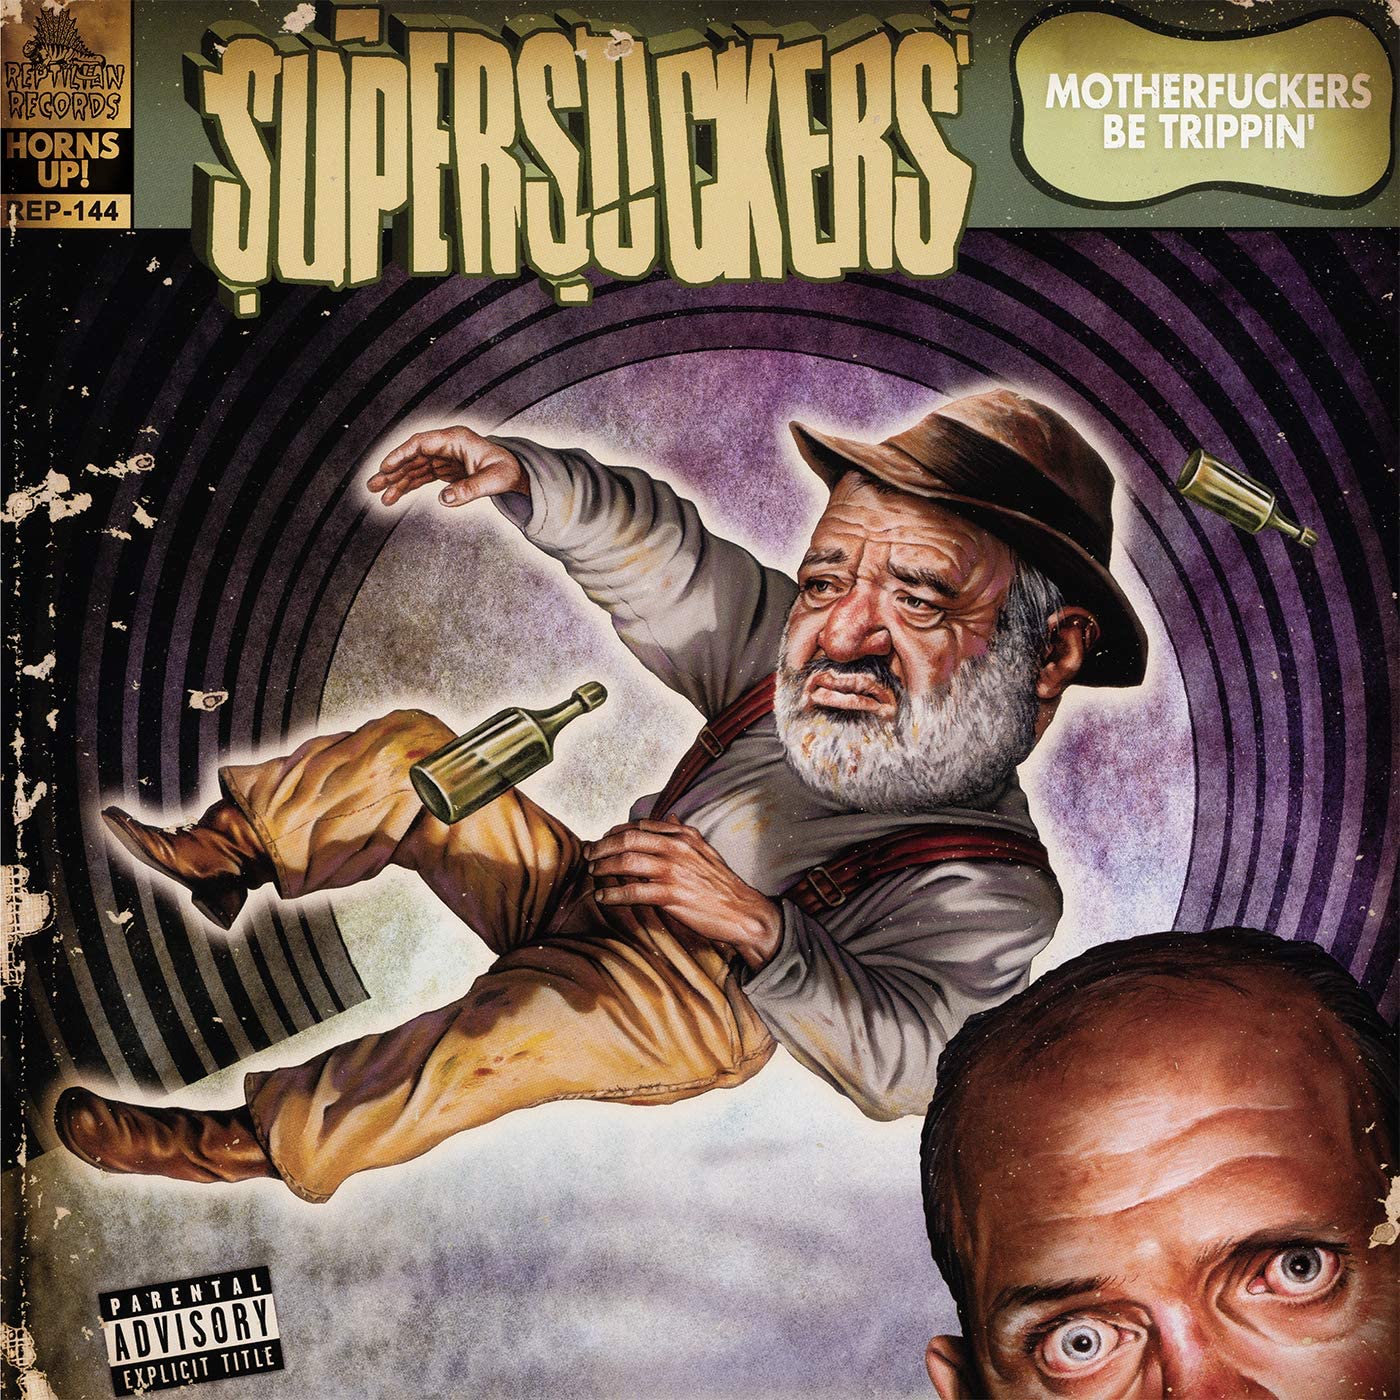 Supersuckers - Motherfuckers Be Trippin' (Vinyl LP)